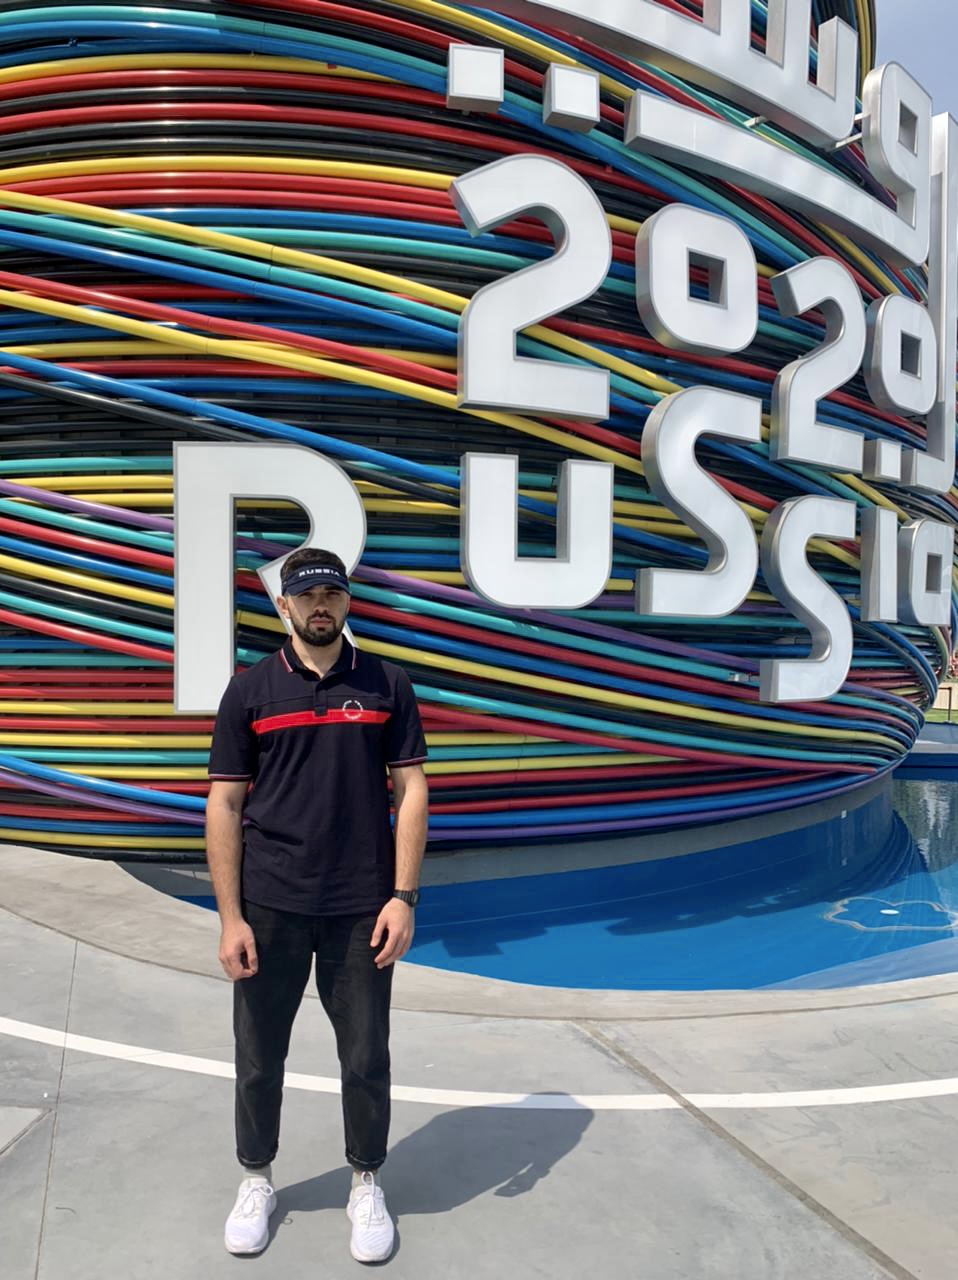 Креативные и модные: российский павильон  Всемирной выставки EXPO-2020 Dubai покажет Putin Team Russia